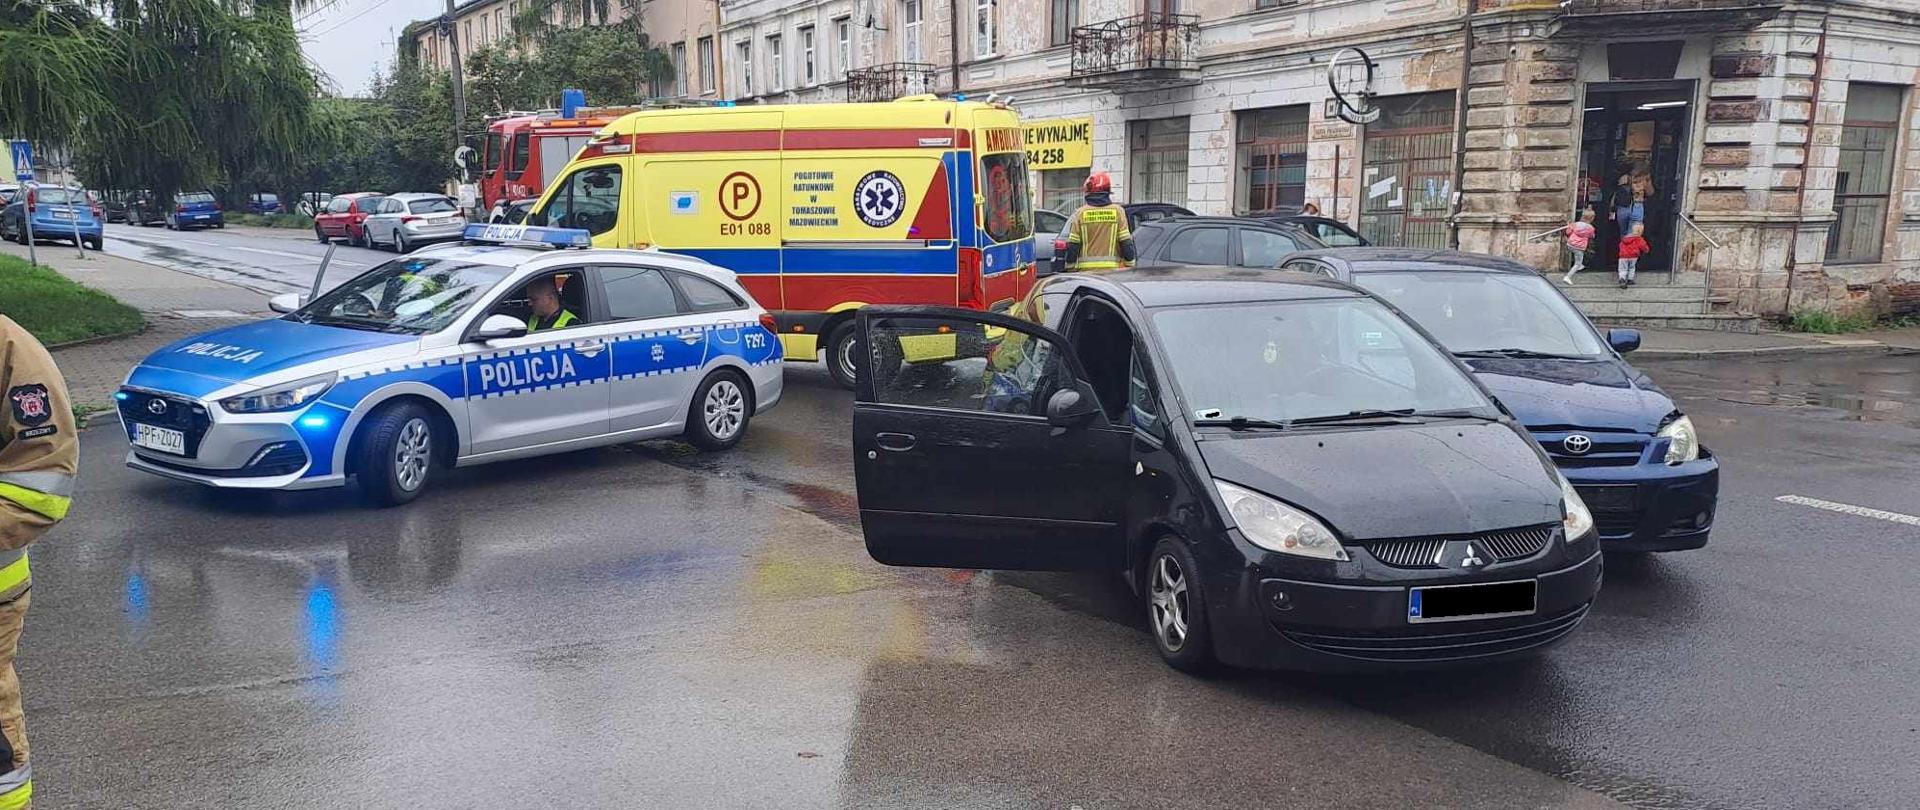 Skrzyżowania w centrum Brzeziny dwa samochody po kolizji granatowa Toyota oraz czarne Mitsubishi. Na drugim planie samochód Policji oraz ambulans.